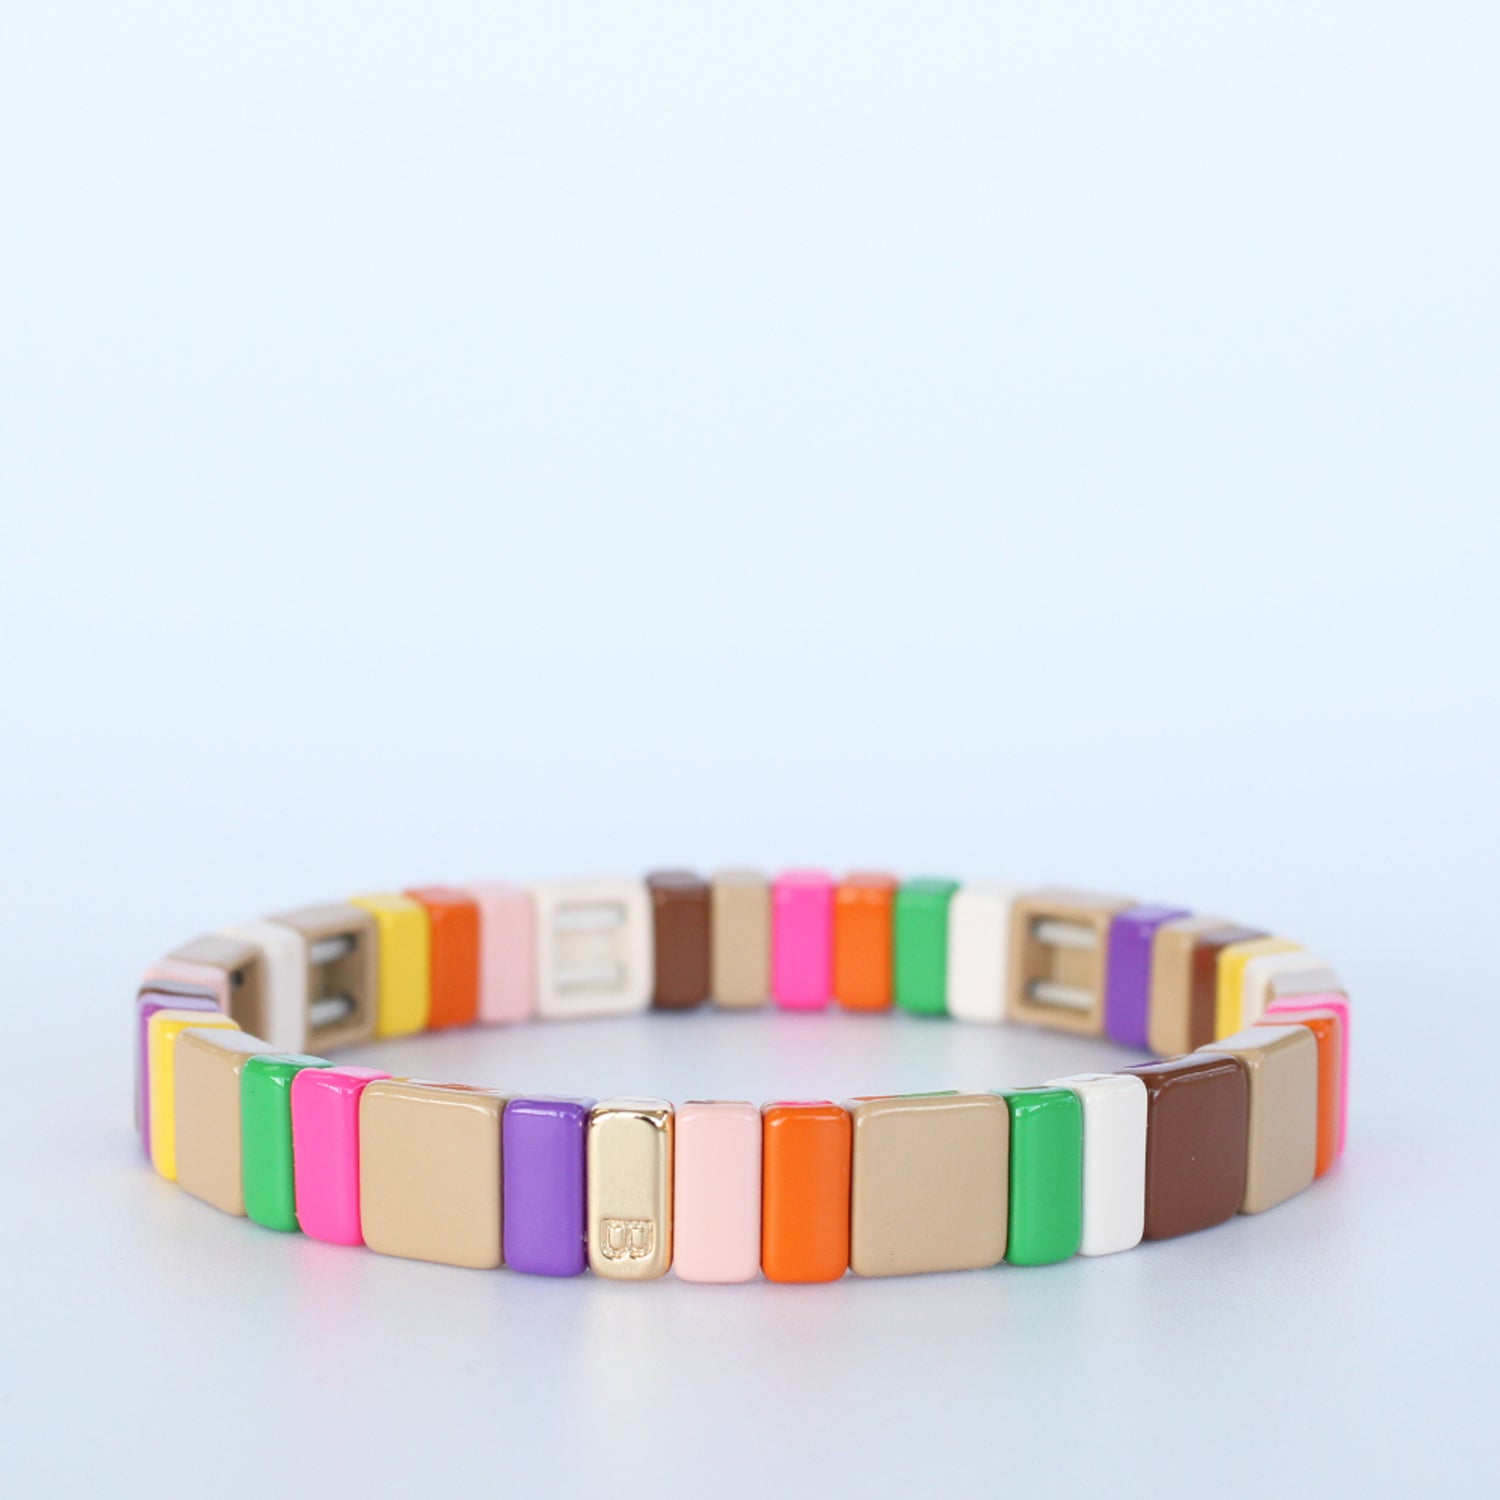 Square bright colors enamel tile stretch bracelet